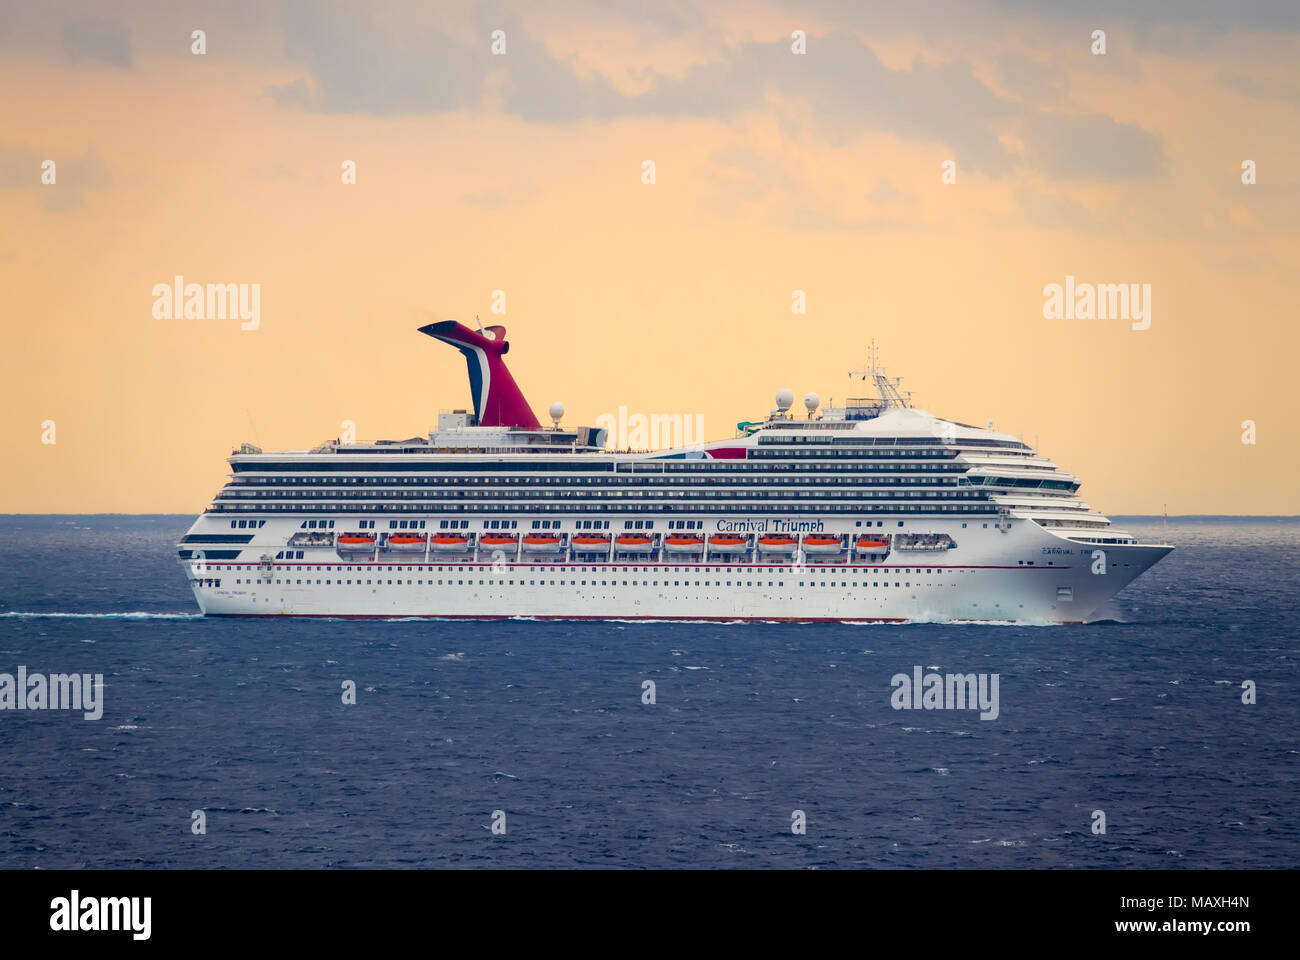 Carnival Triumph Cruise ship Stock Photo